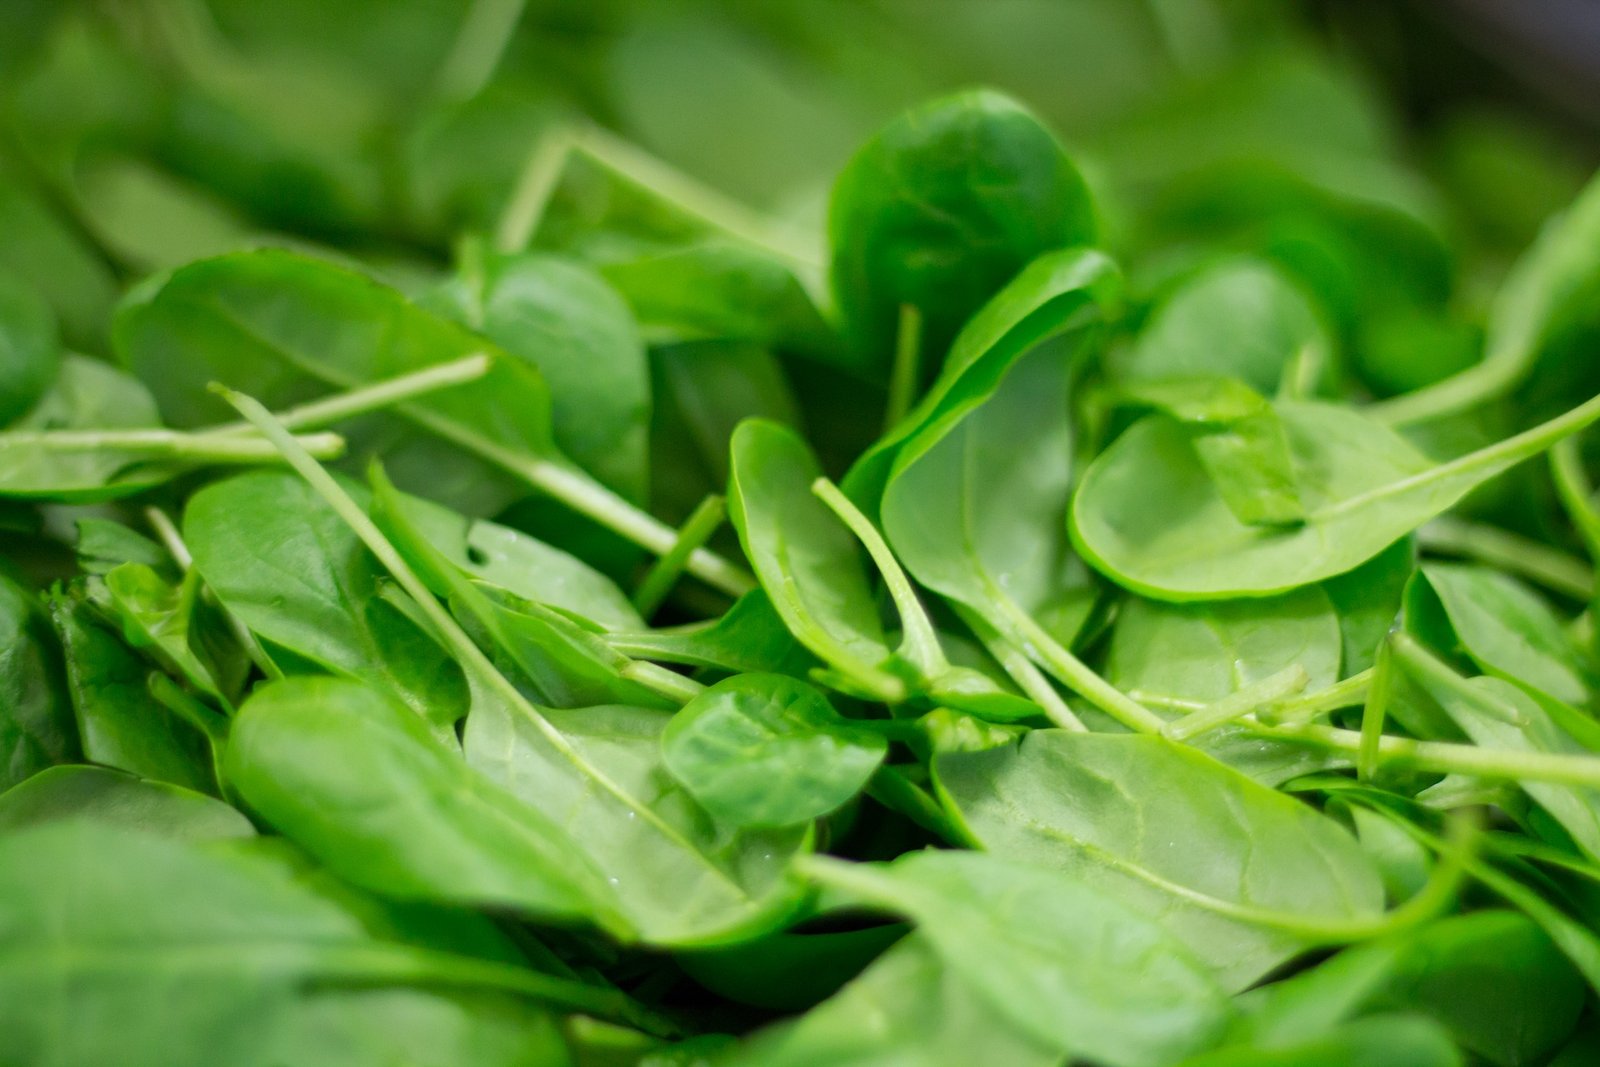 La majoria de verdures de fulla verda solen ser molt bones per a la salut.